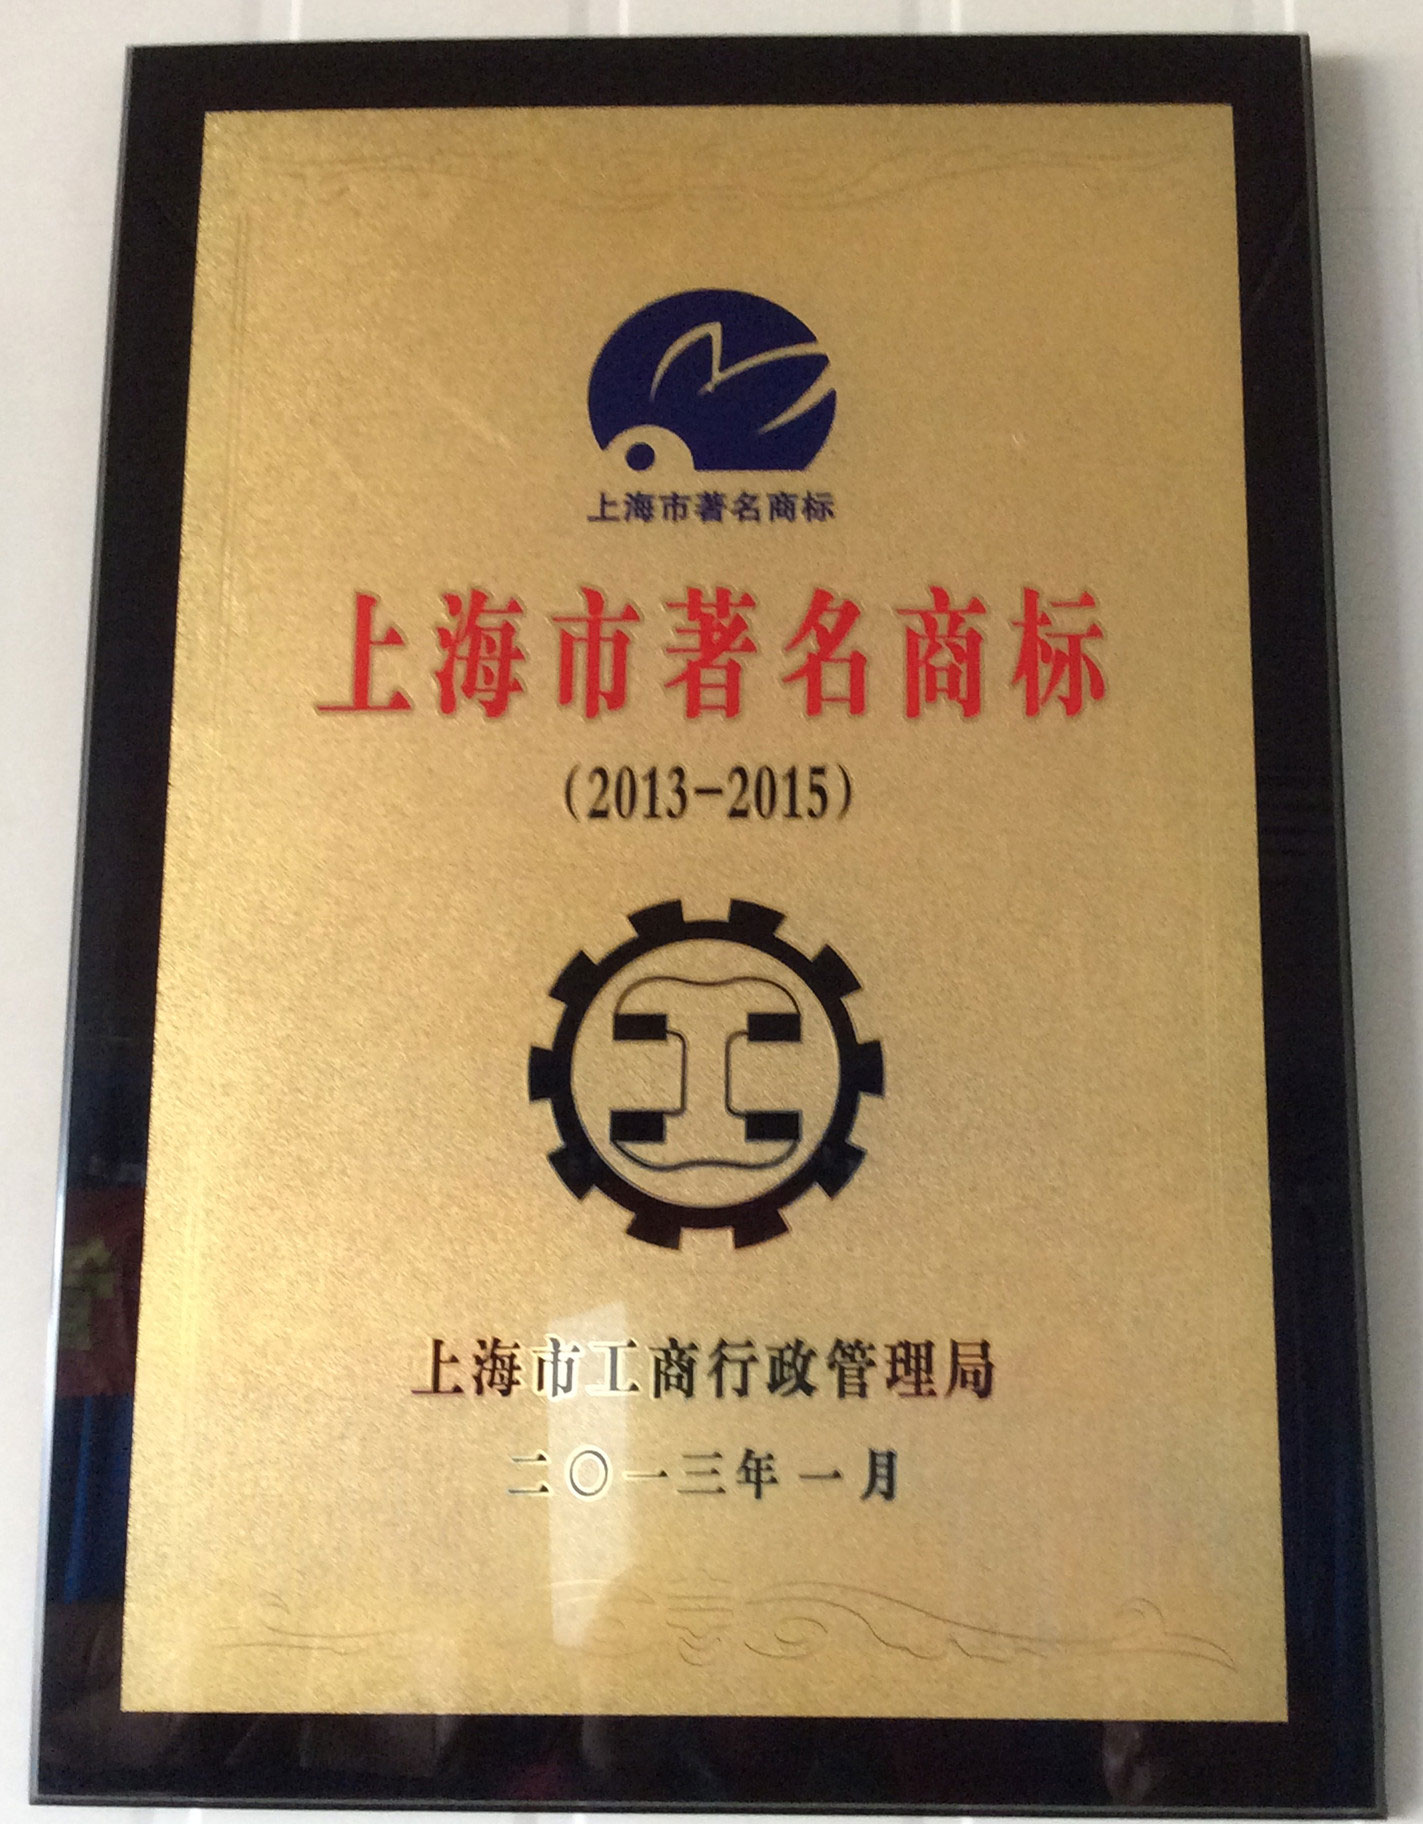 上海著名商標2014